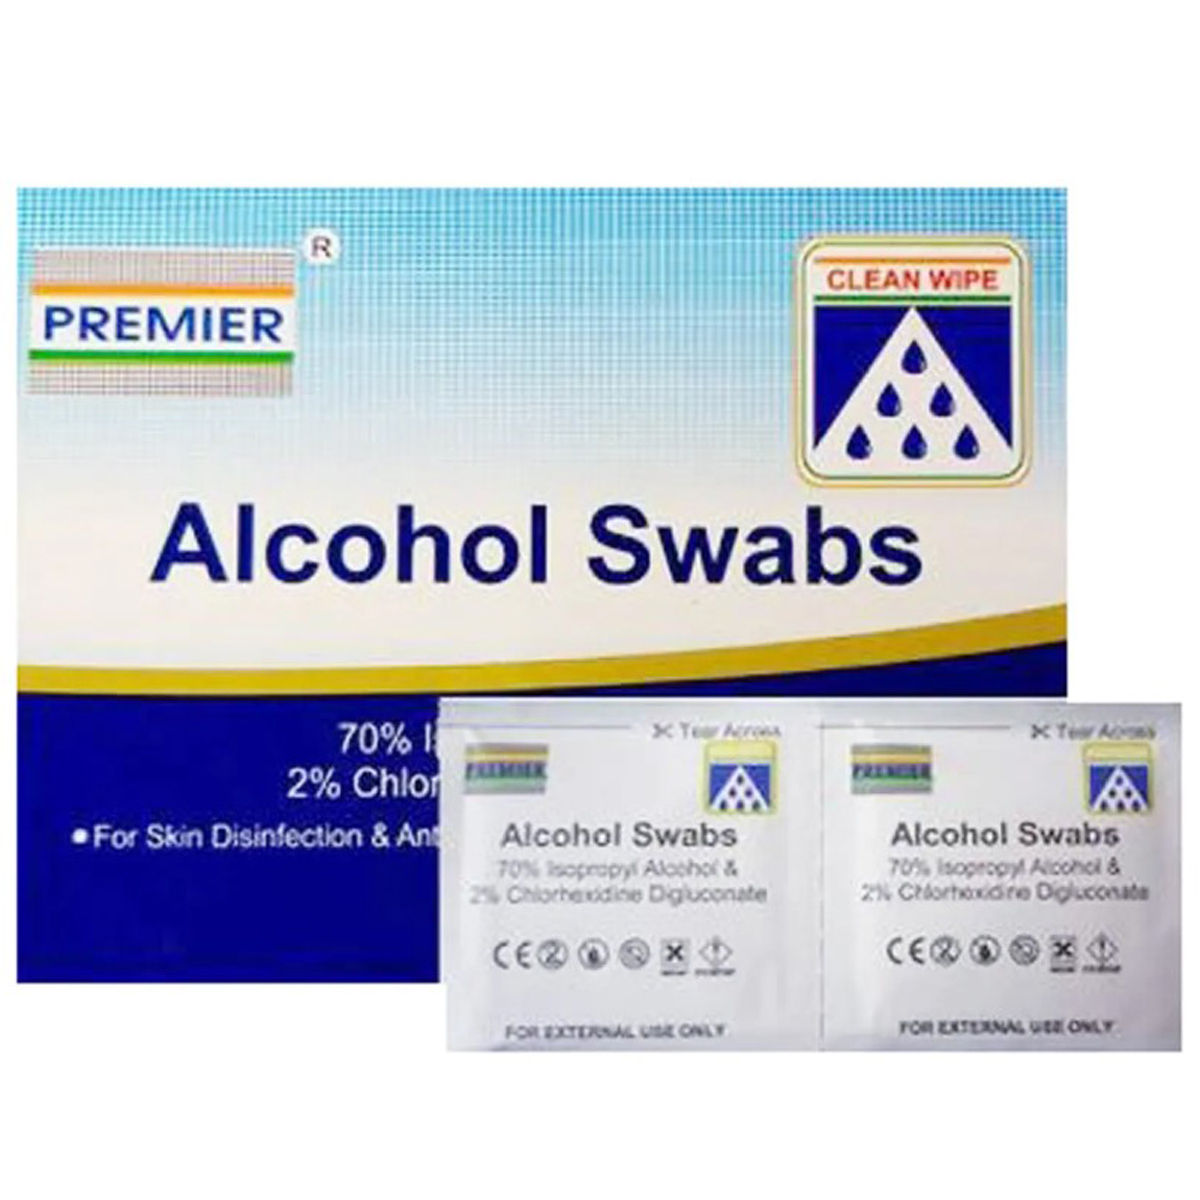 Buy Alcohol Swabs, 100 Count Online